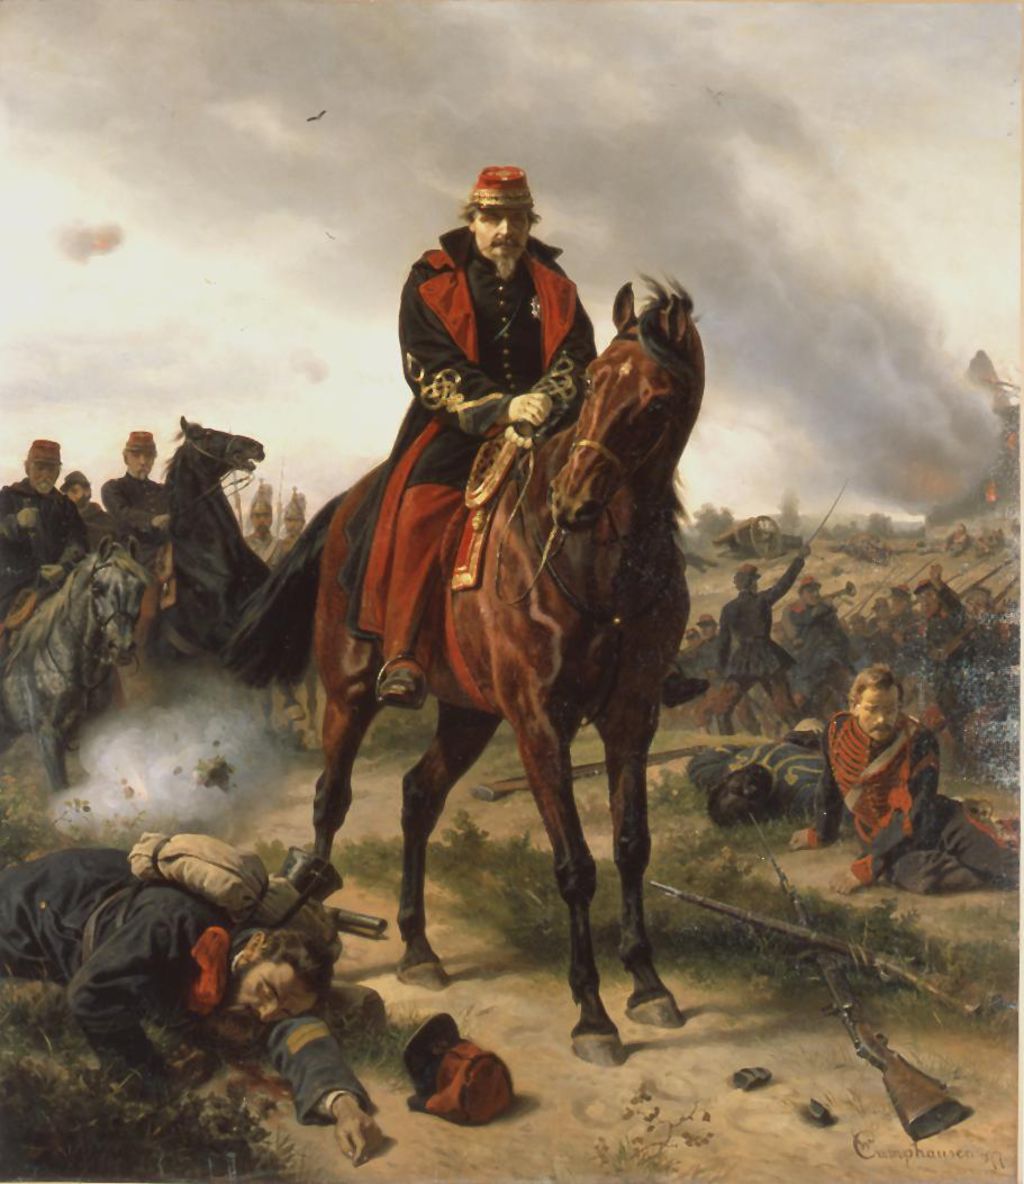 Gemälde: Wilhelm Camphausen, "Napoleon III. auf dem Schlachtfeld von Sedan", 1877